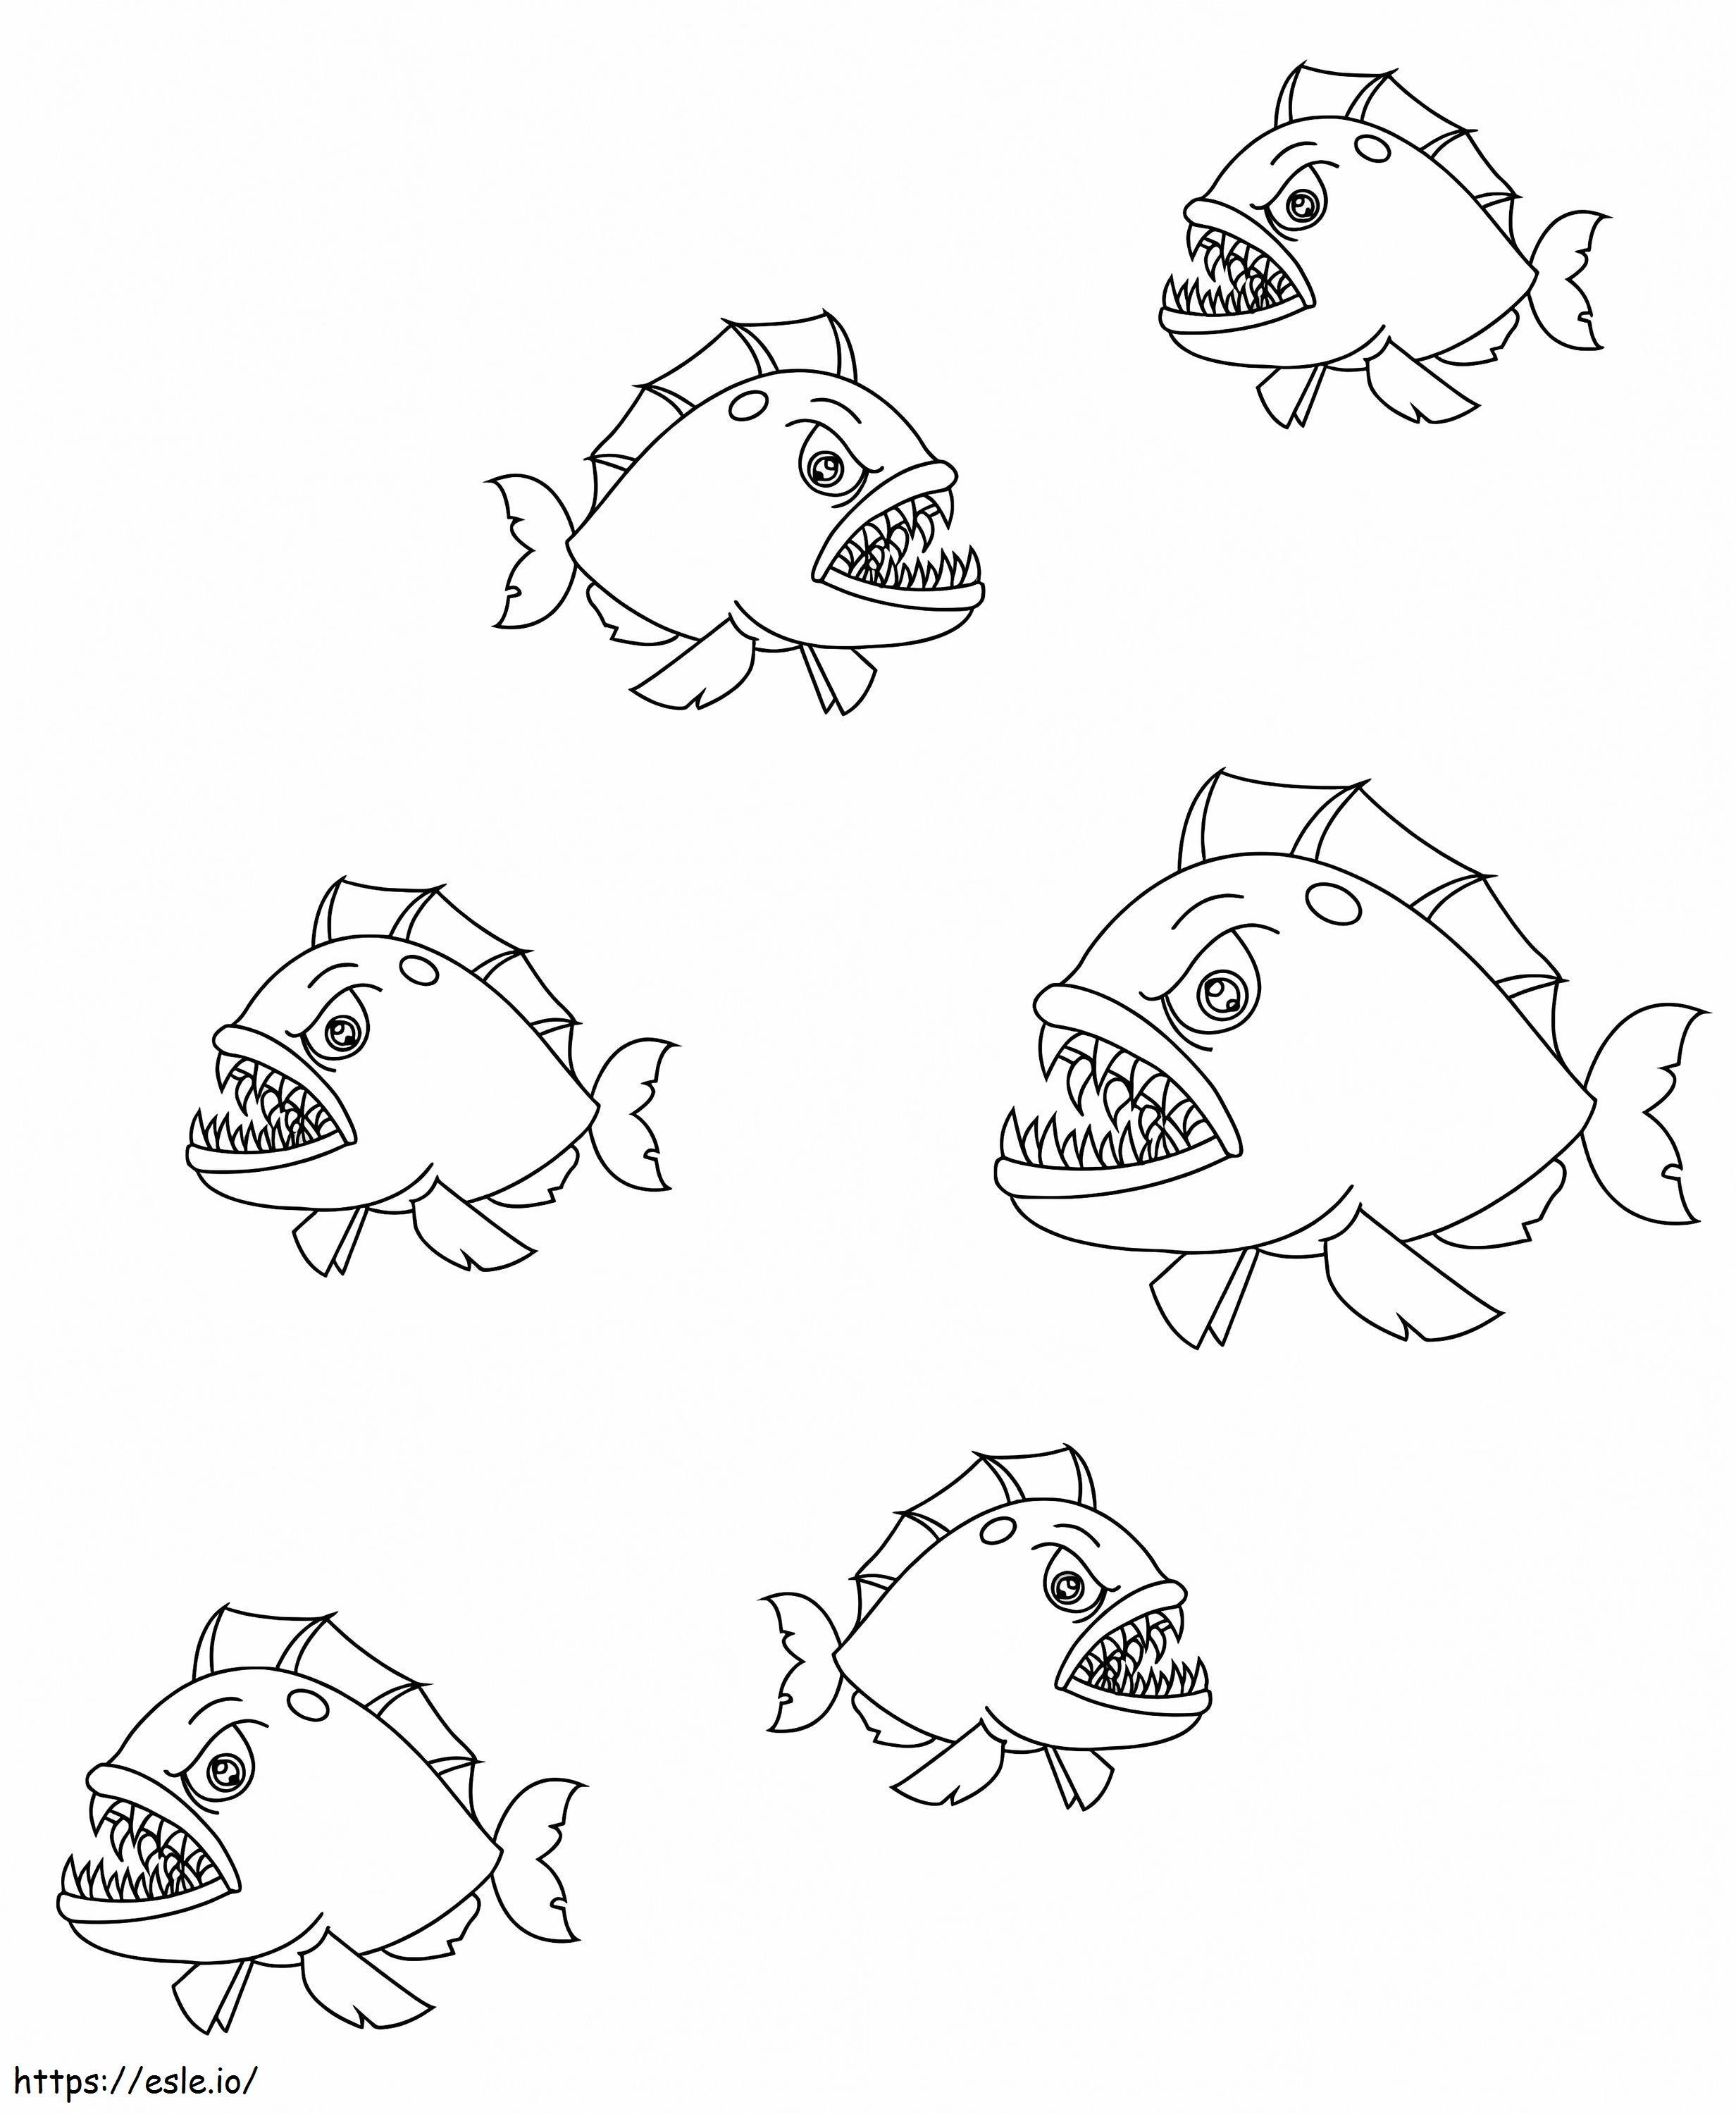 Piranhas coloring page